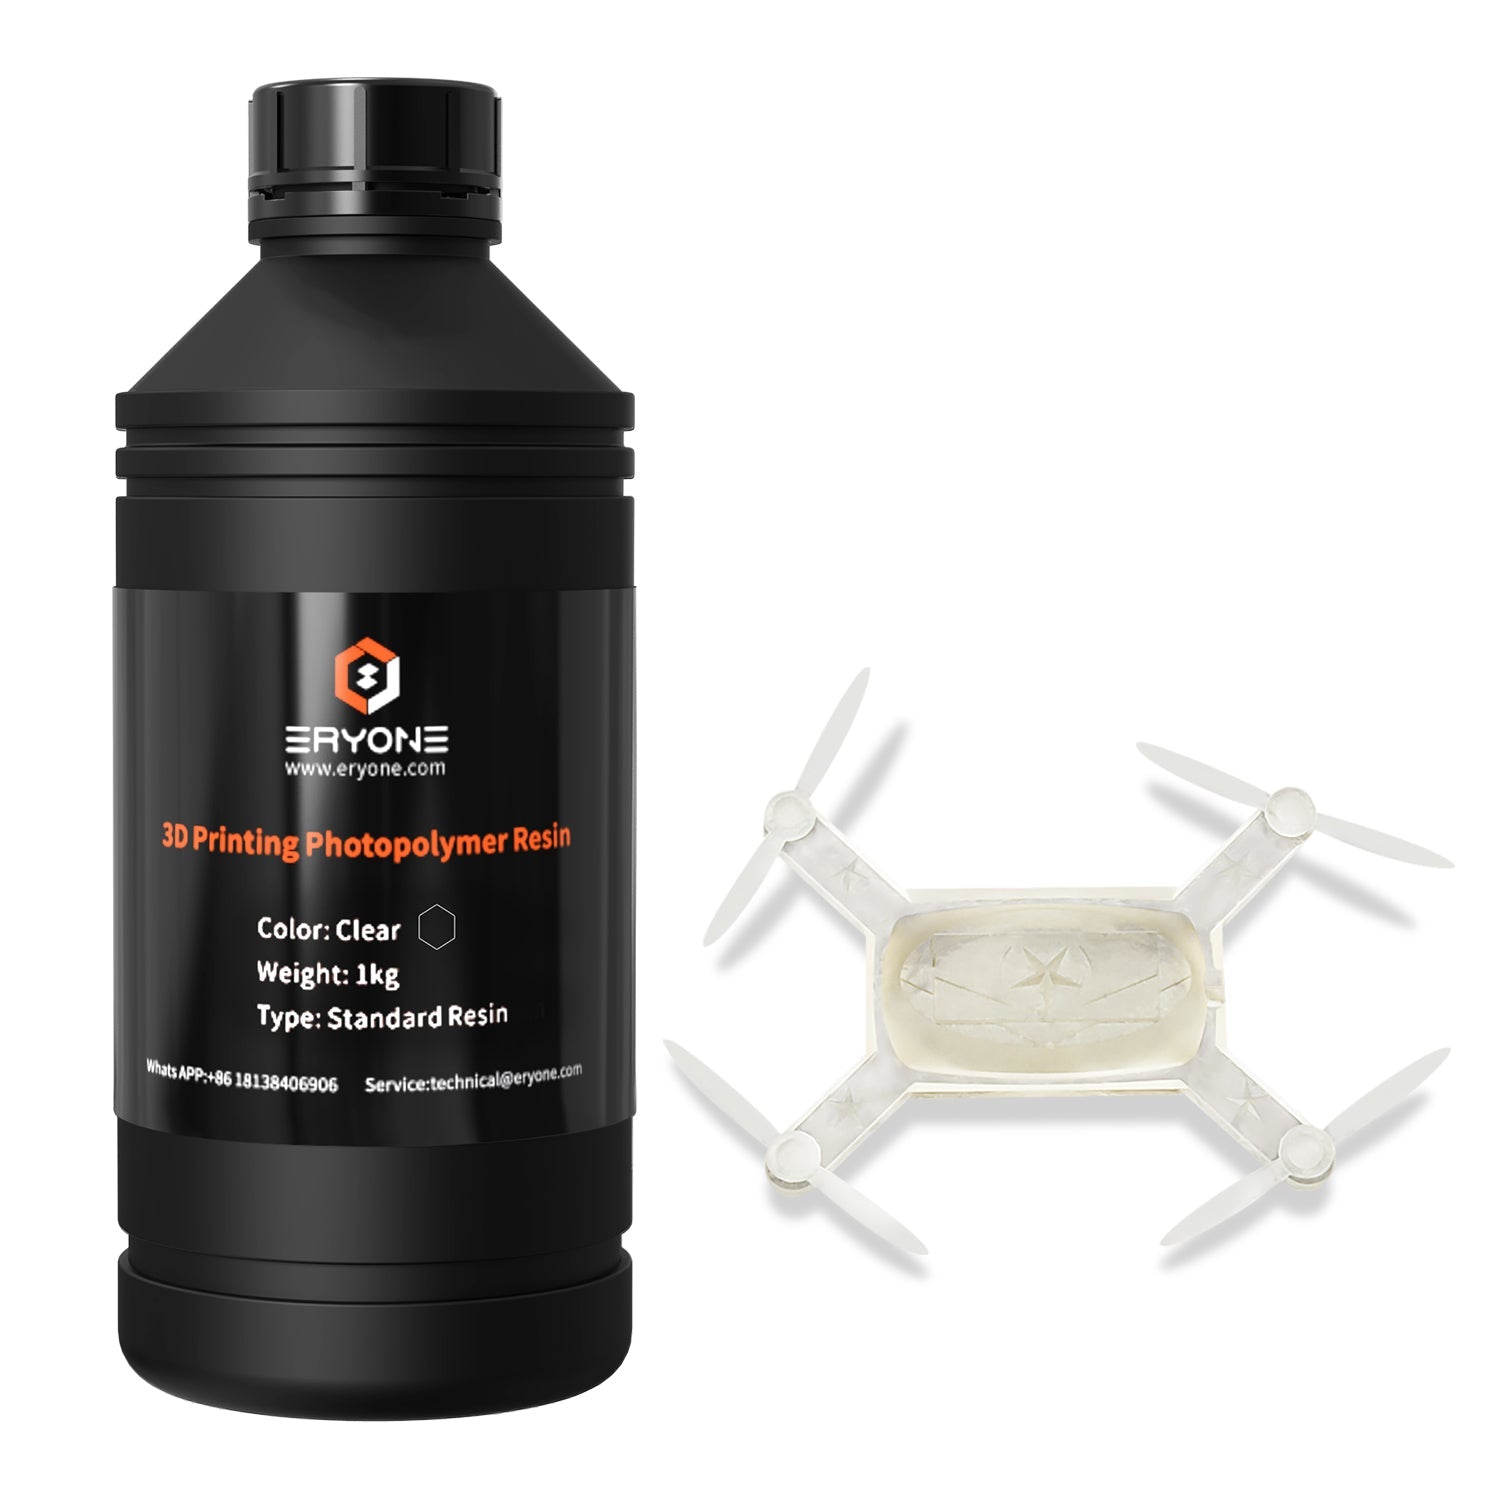 Eryone Super Low Odor 3D Printer Photopolymer Resin 1KG